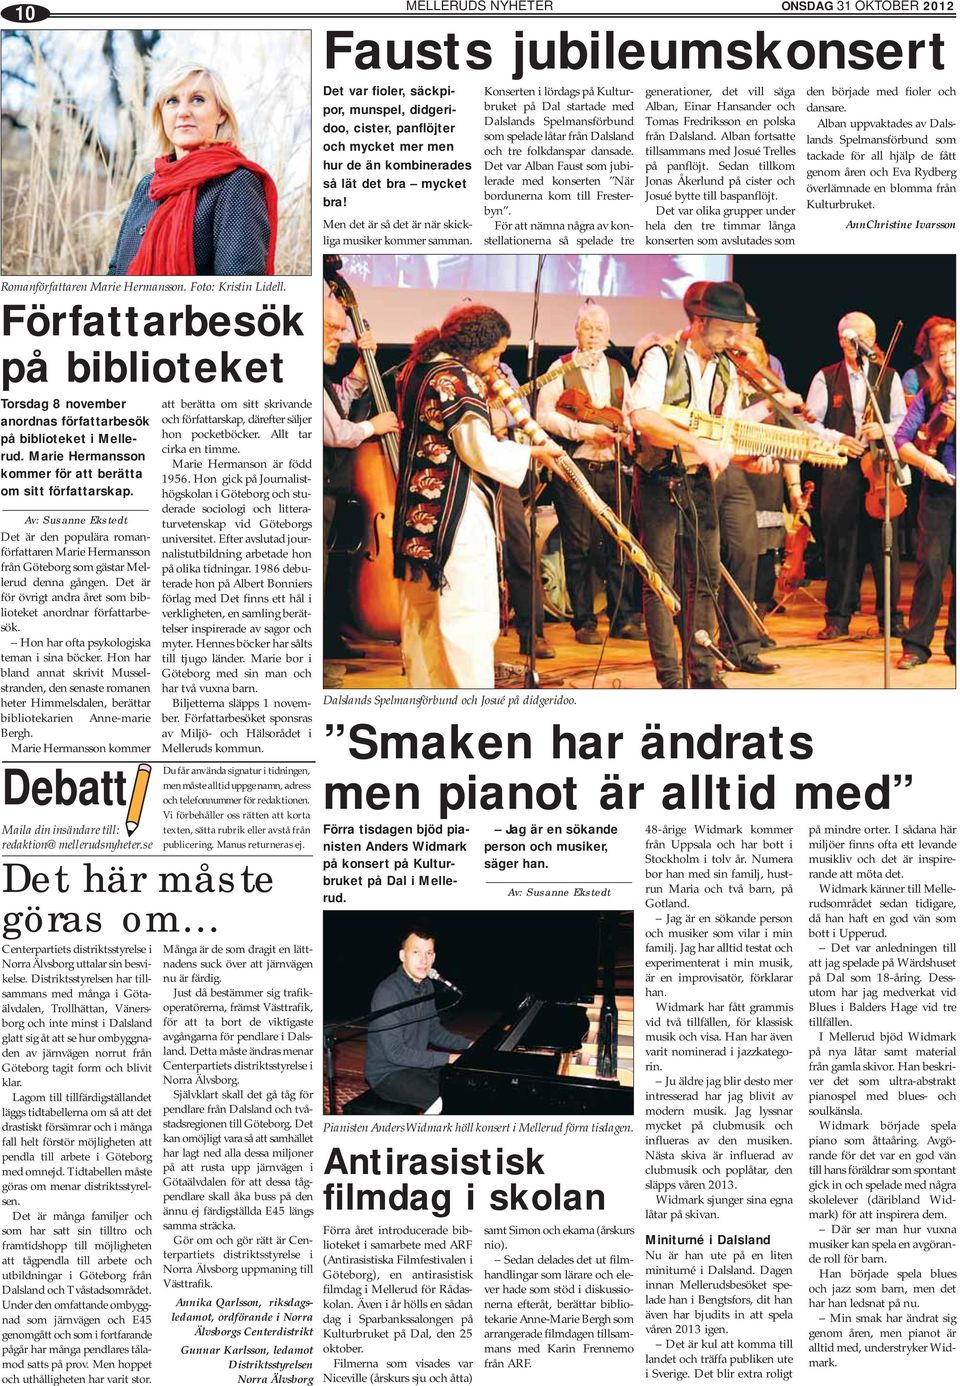 Konserten i lördags på Kulturbruket på Dal startade med Dalslands Spelmansförbund som spelade låtar från Dalsland och tre folkdanspar dansade.